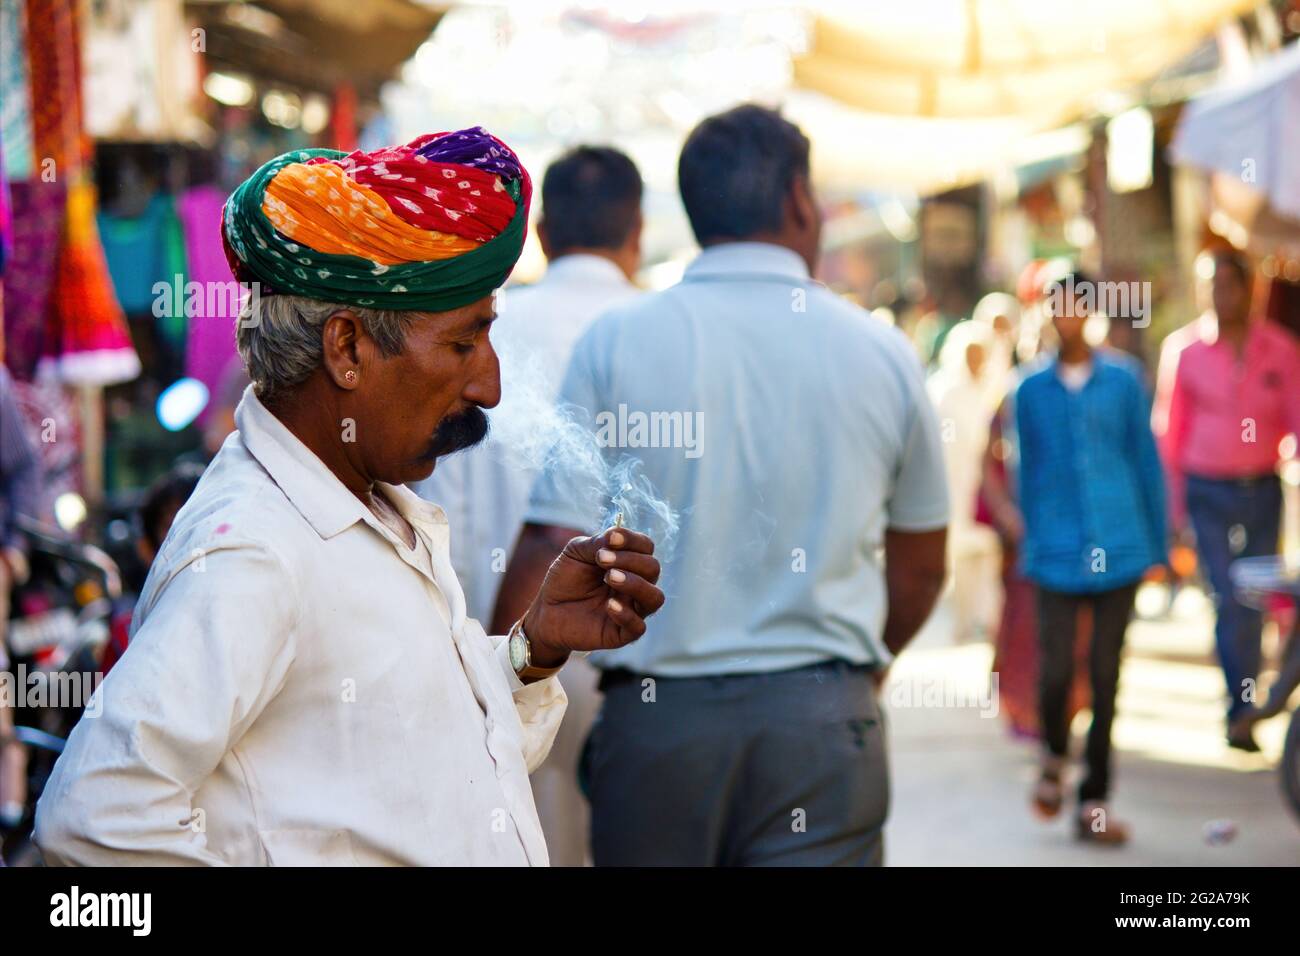 Pushkar, Indien - 10. NOVEMBER 2016: Ein alter Rajasthani-Mann in traditioneller ethnischer Kleidung wie buntem Turban und typischer weißer Hemdraucherzigarette Stockfoto